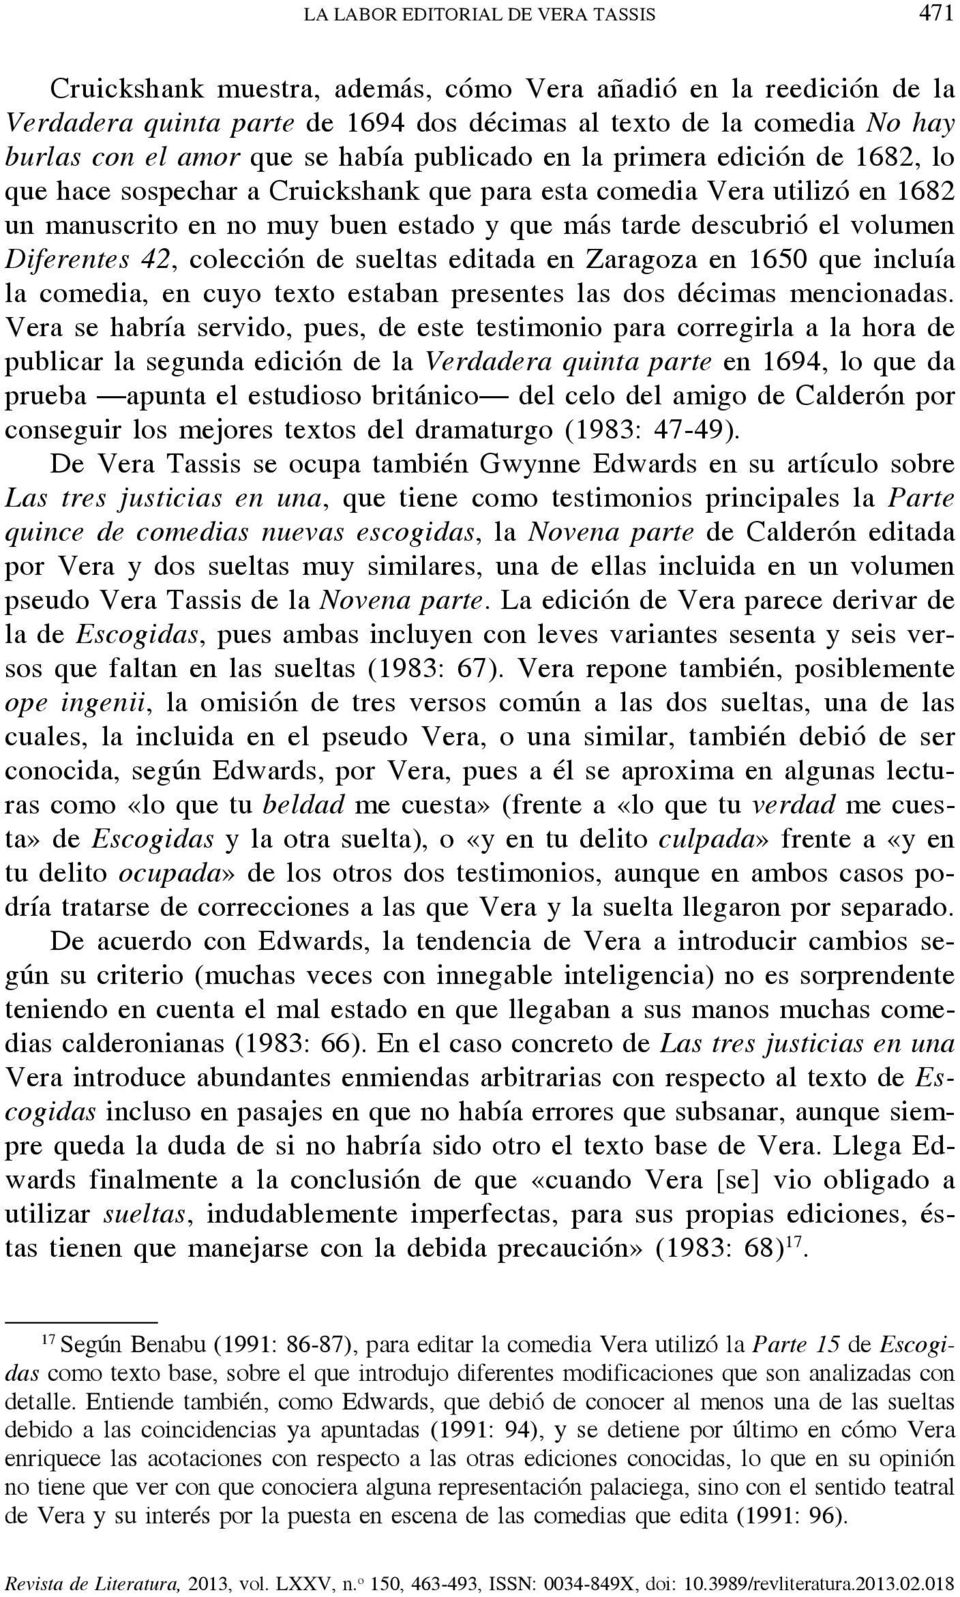 volumen Diferentes 42, colección de sueltas editada en Zaragoza en 1650 que incluía la comedia, en cuyo texto estaban presentes las dos décimas mencionadas.